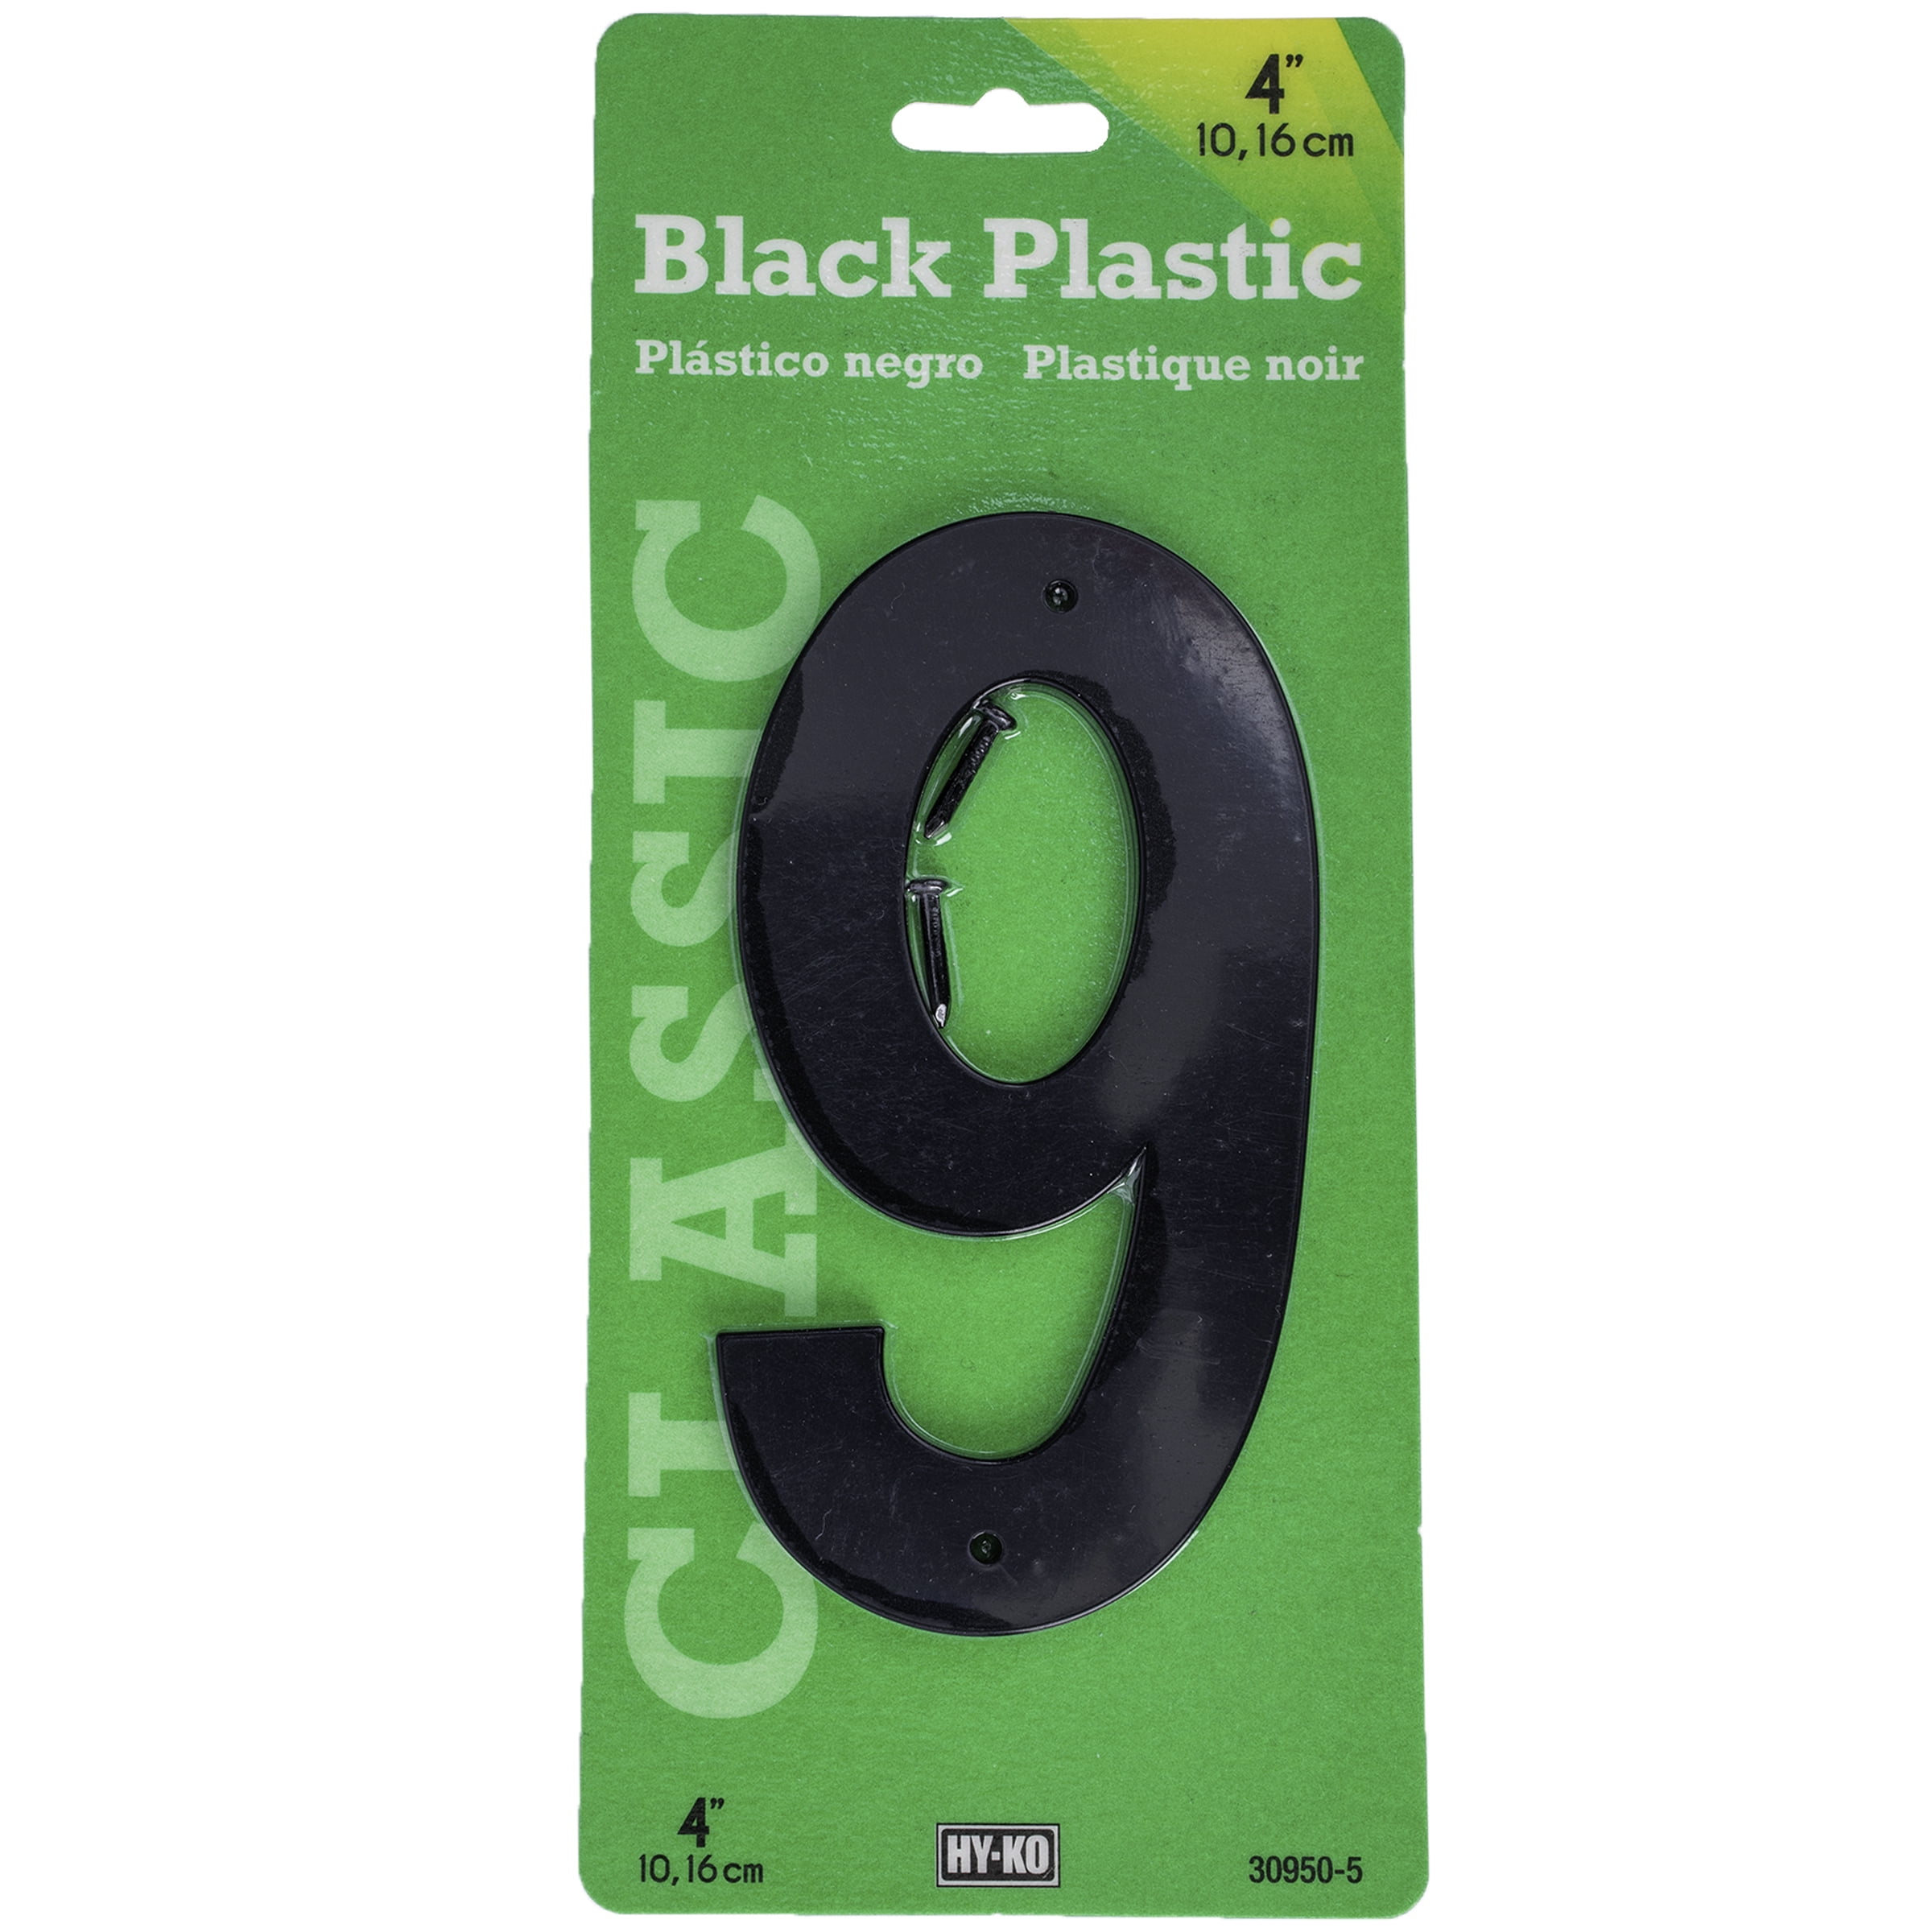 HY-KO 4" BLACK PLASTIC MODERN NUMBER 9